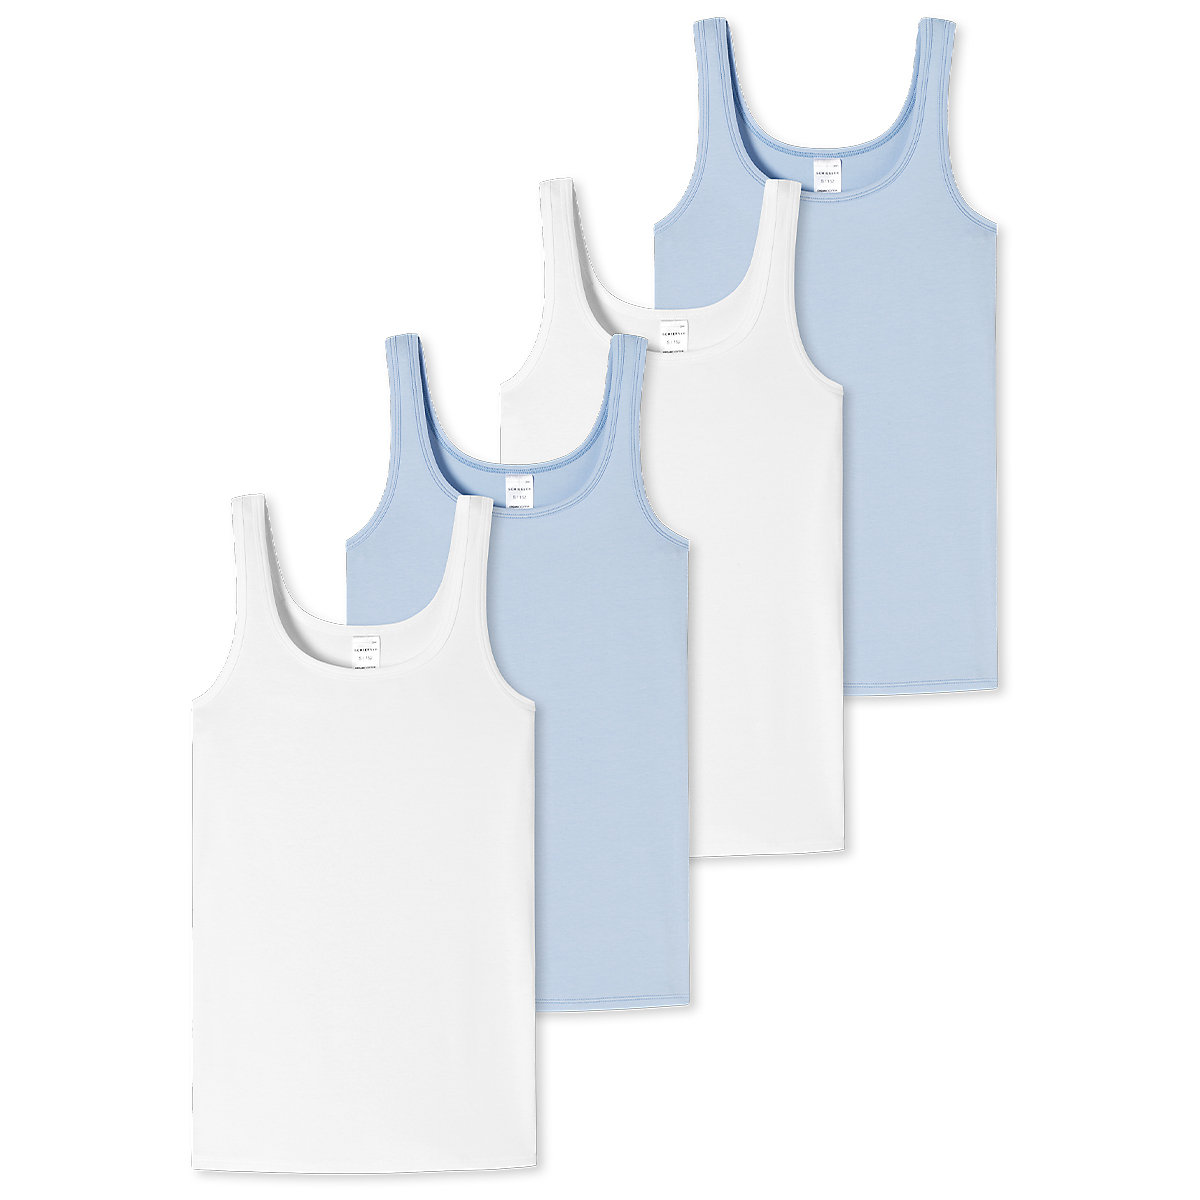 SCHIESSER Unterhemd / Tanktop 4er Pack 95/5 Organic Cotton Unterhemden für Mädchen blau